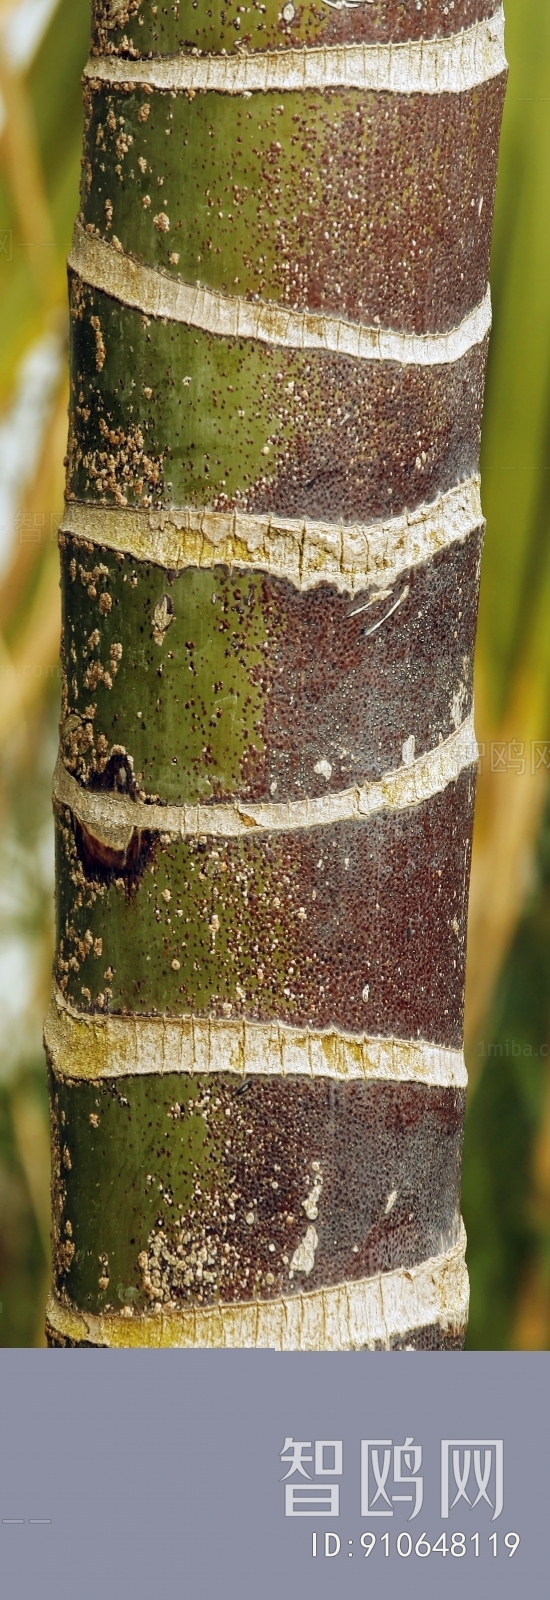 Bark Texture